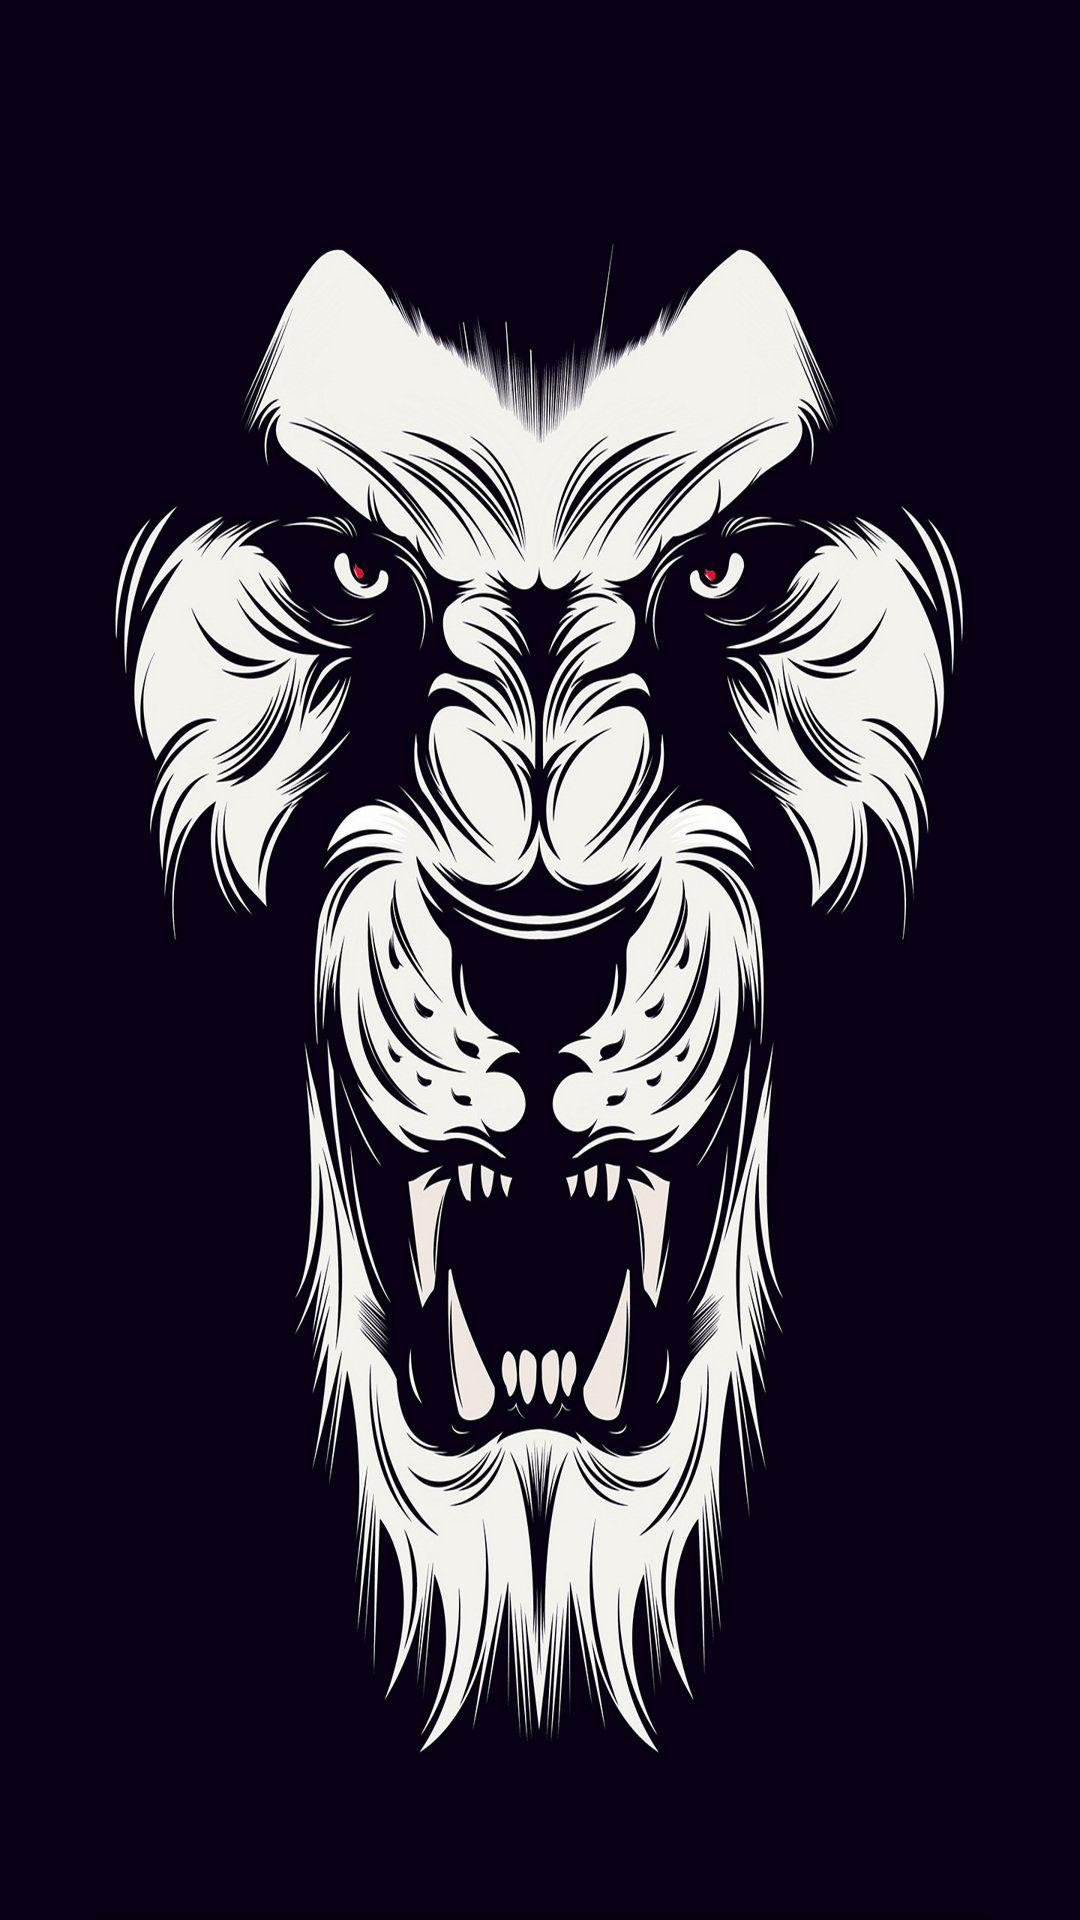 Black and White Lion Logo - White Lion logo with Black ground - Album on Imgur